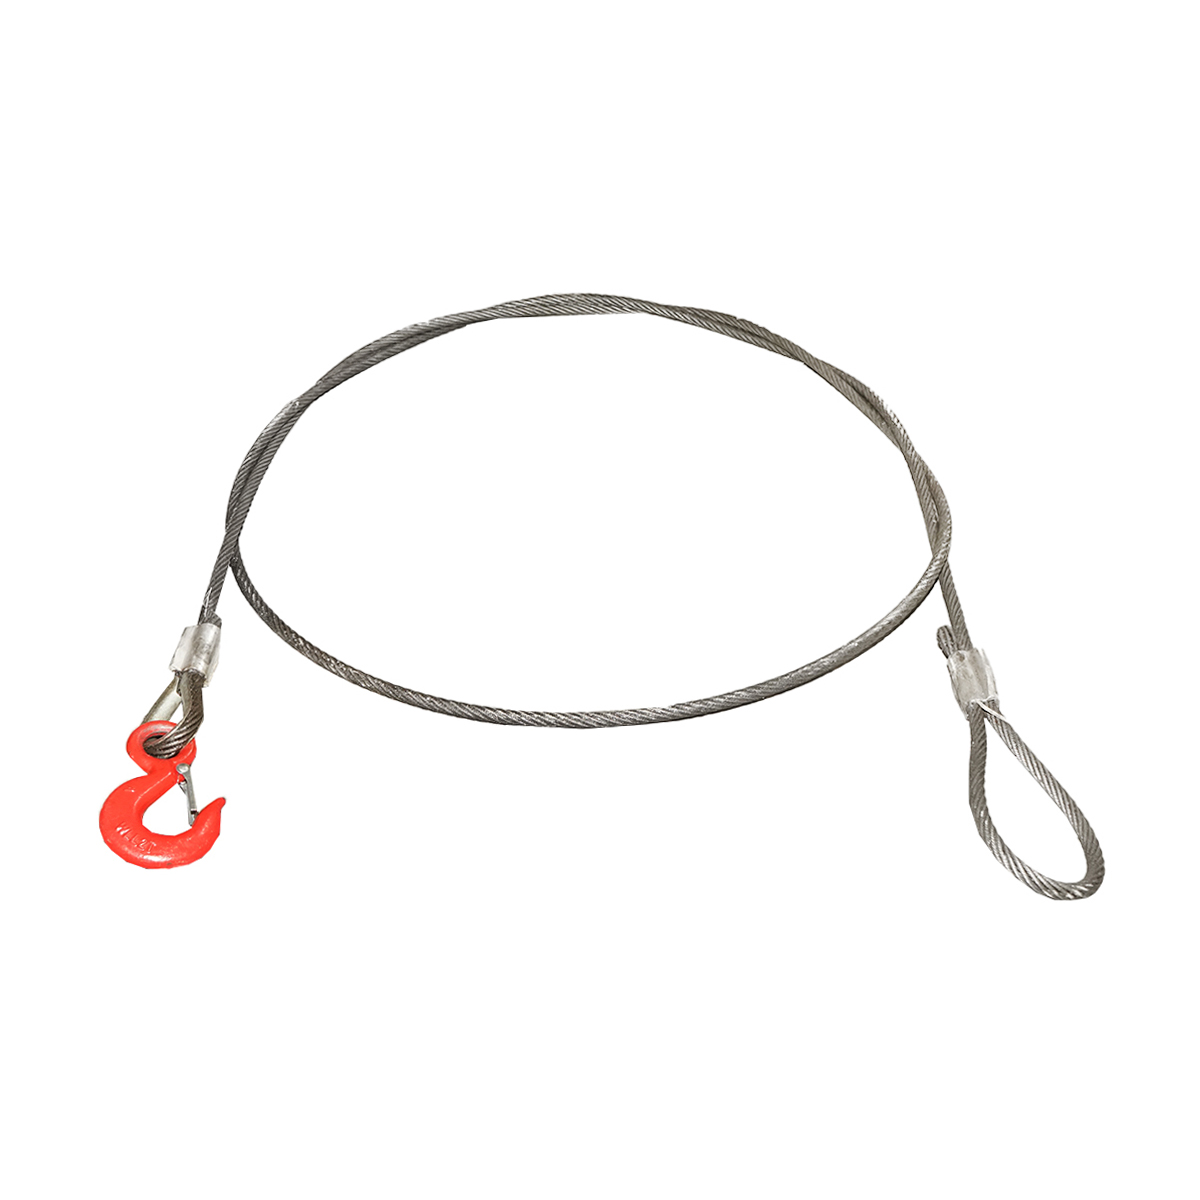 Cablu/sufa troliu din otel cu grosime 12mm si lungime 4m, carlig si inel pentru tractat sau ridicat